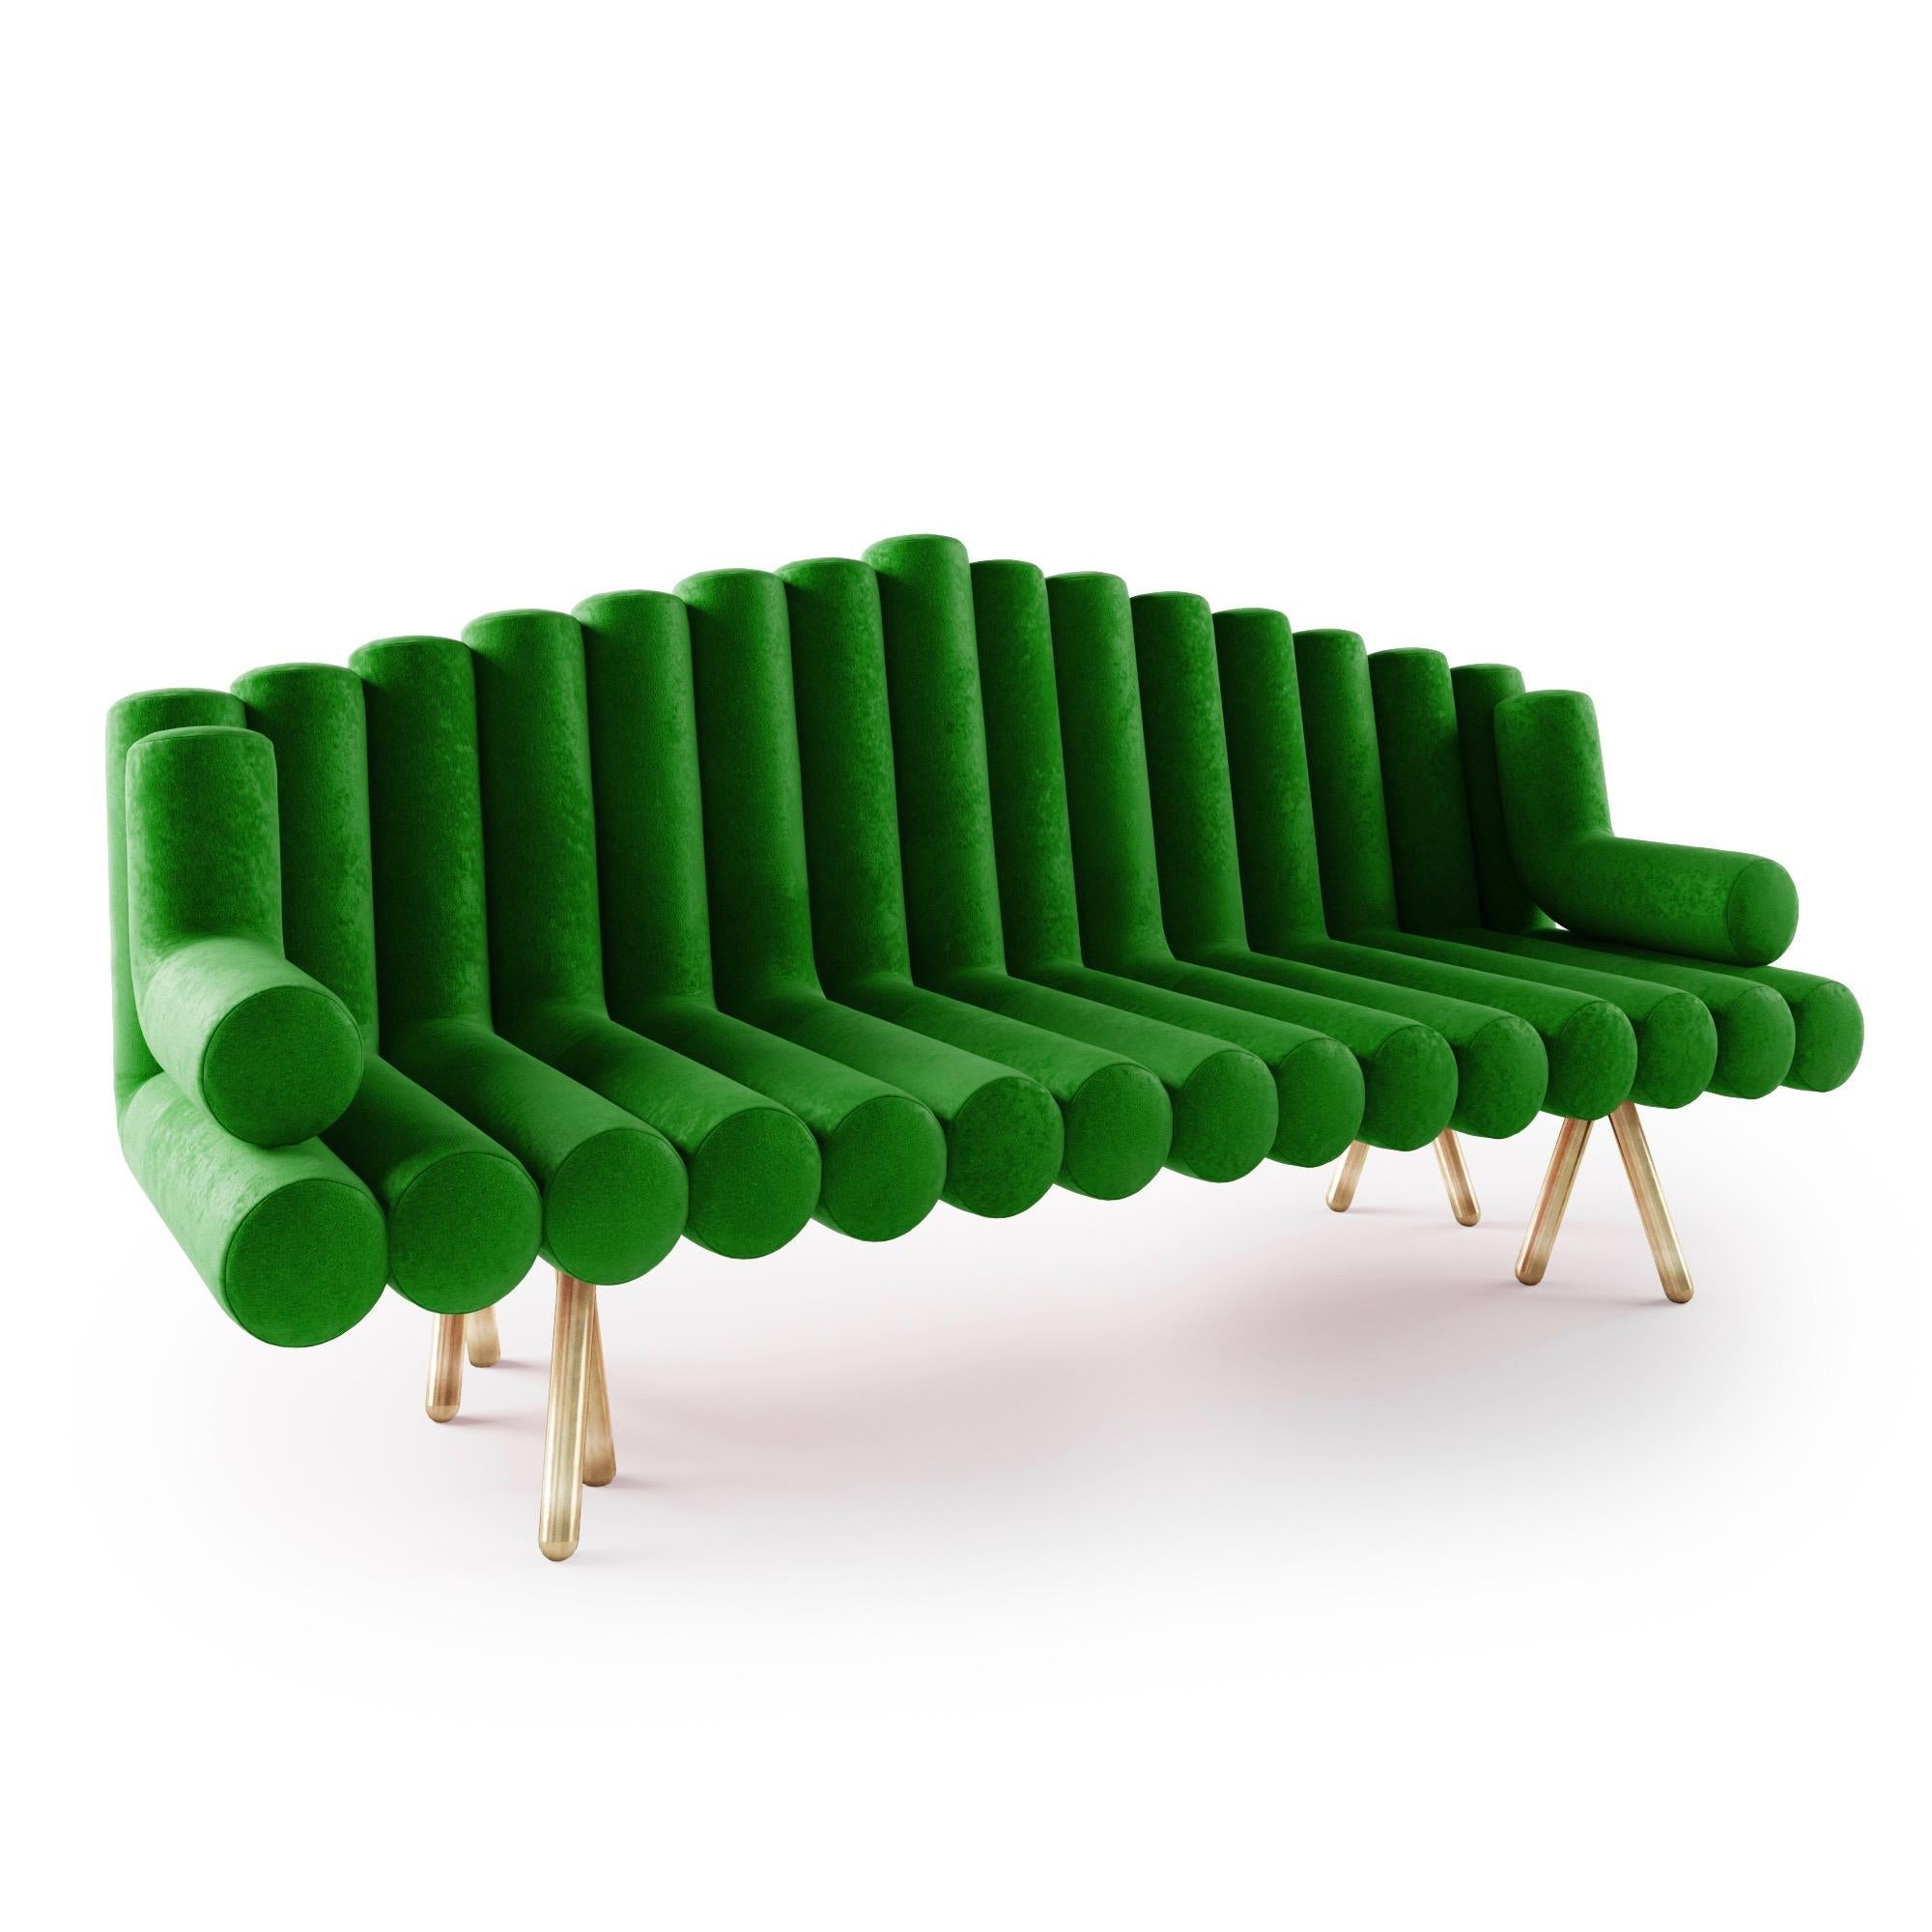 Le canapé Flûte s'inspire de la flûte de pan. Unique et magnifique, le canapé flûte est l'une des meilleures ventes de Troy Smith. Construit selon des normes et une qualité rigoureuses. Le canapé flûte est élégamment conçu et construit pour durer.